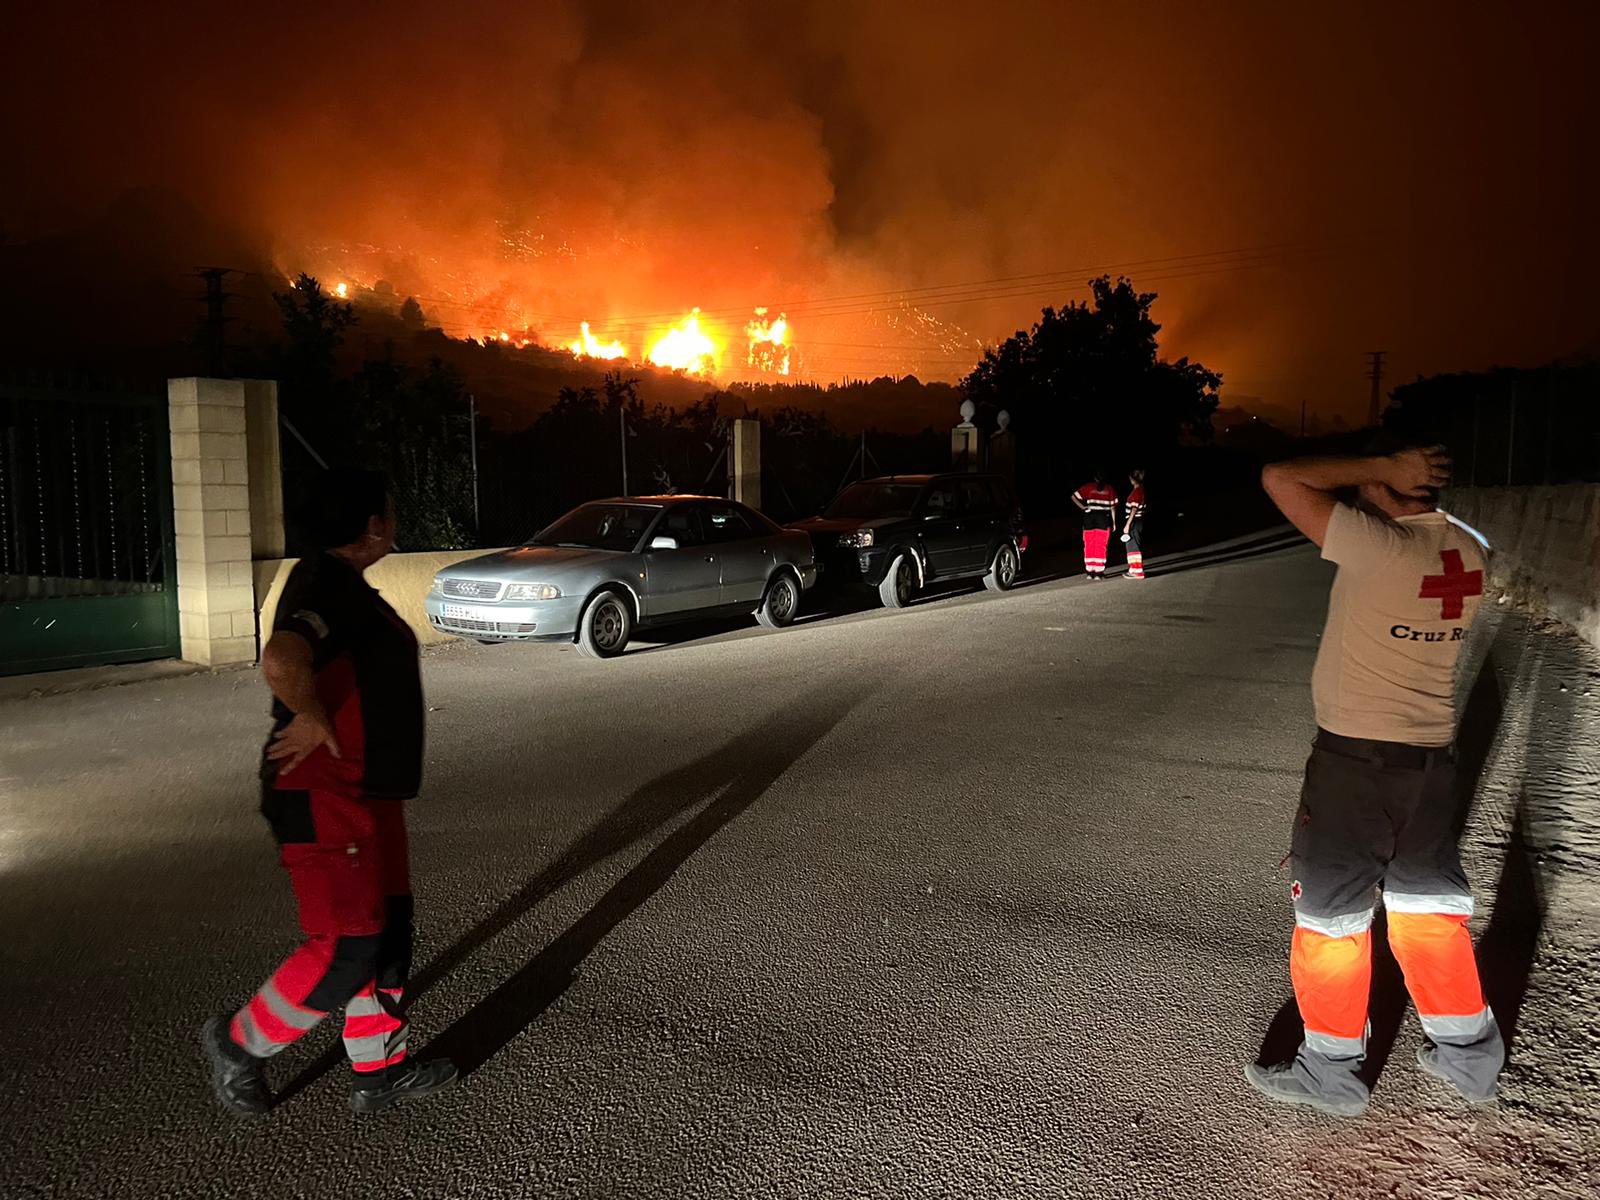 Cerca de cincuenta personas abandonan sus casas por el fuego en Vall d'Ebo (Alicante)